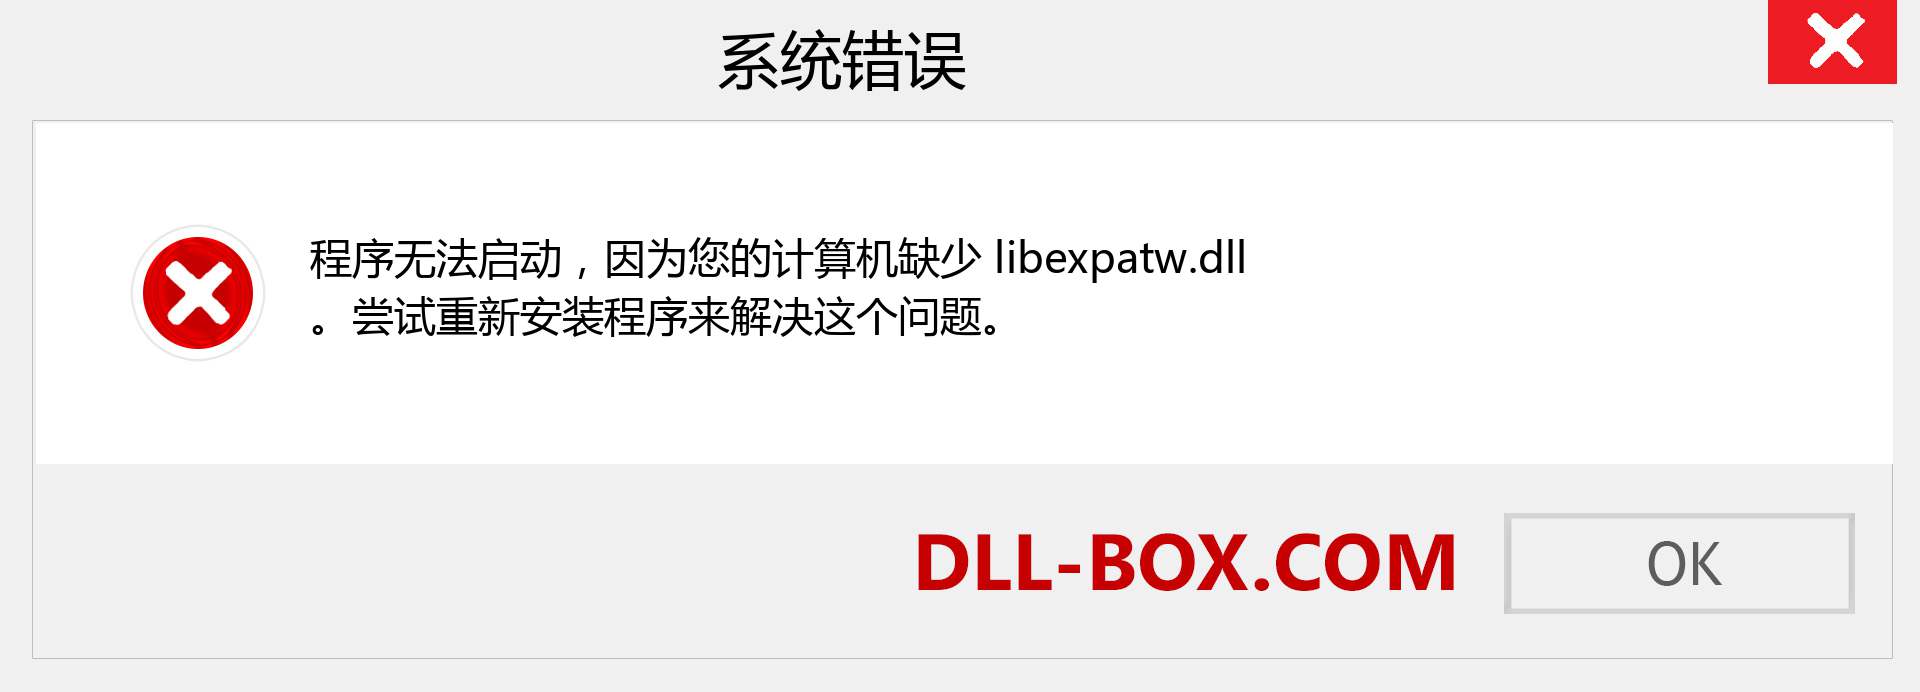 libexpatw.dll 文件丢失？。 适用于 Windows 7、8、10 的下载 - 修复 Windows、照片、图像上的 libexpatw dll 丢失错误